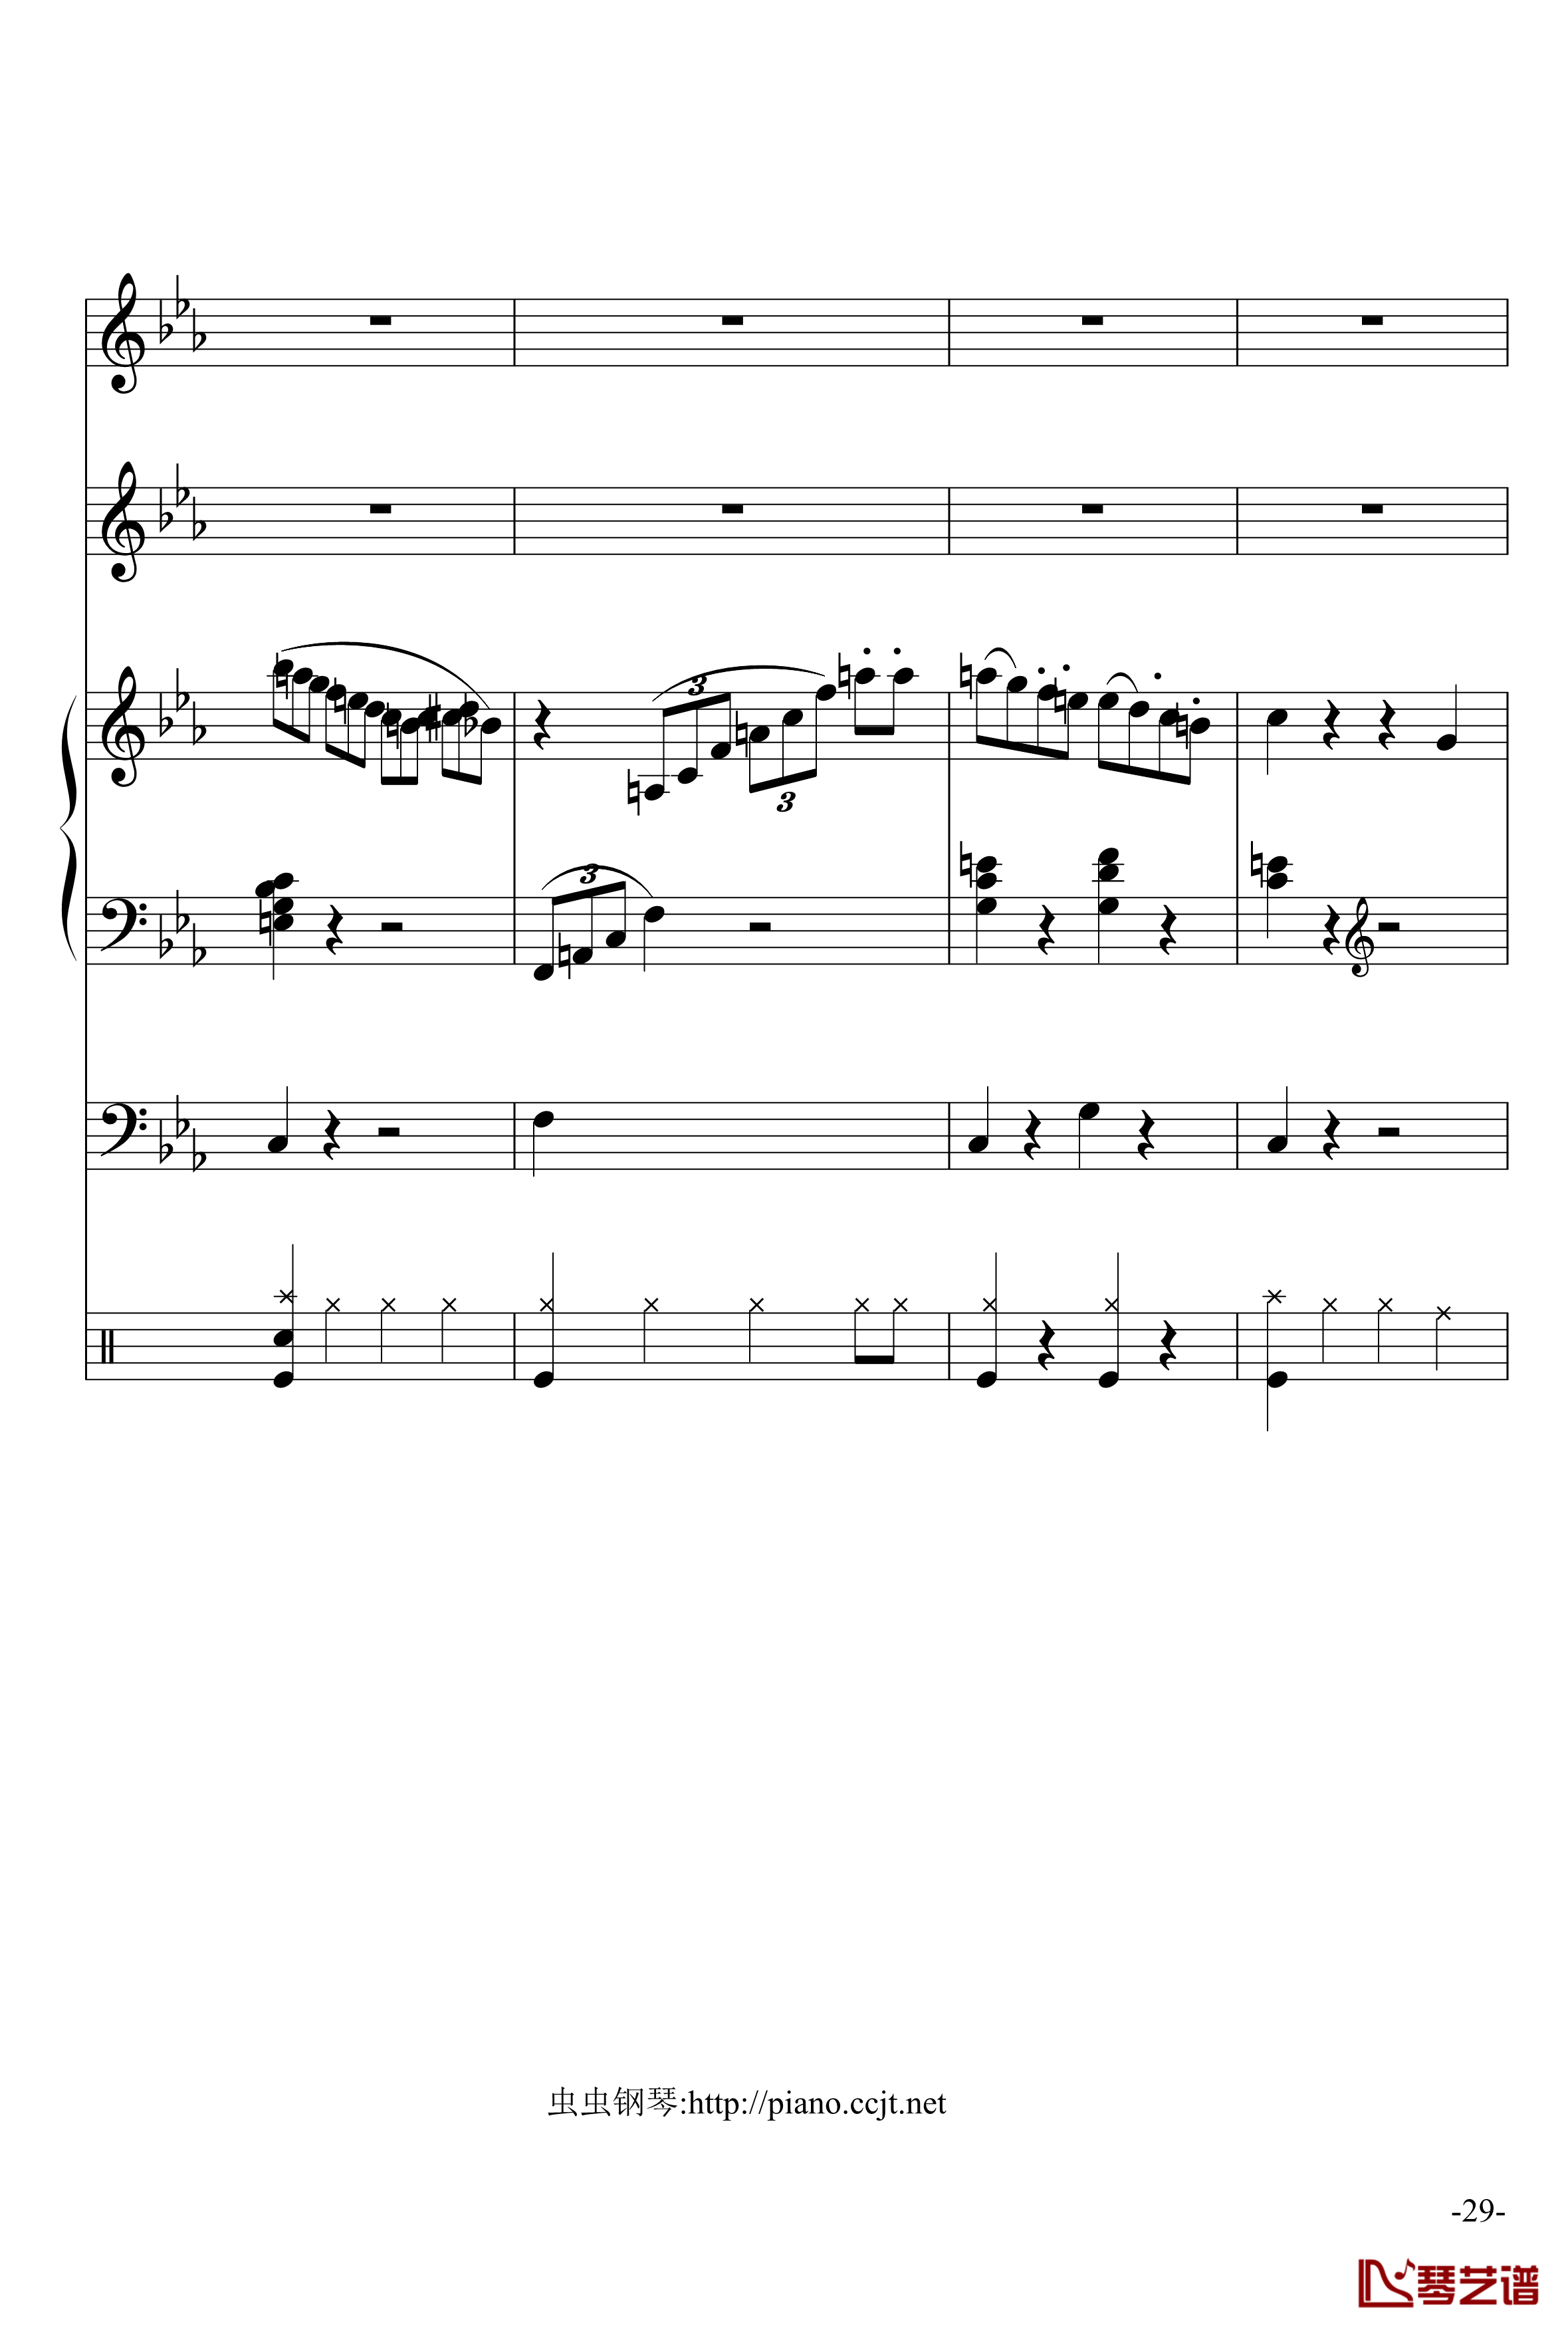 悲怆奏鸣曲钢琴谱-加小乐队-贝多芬-beethoven29